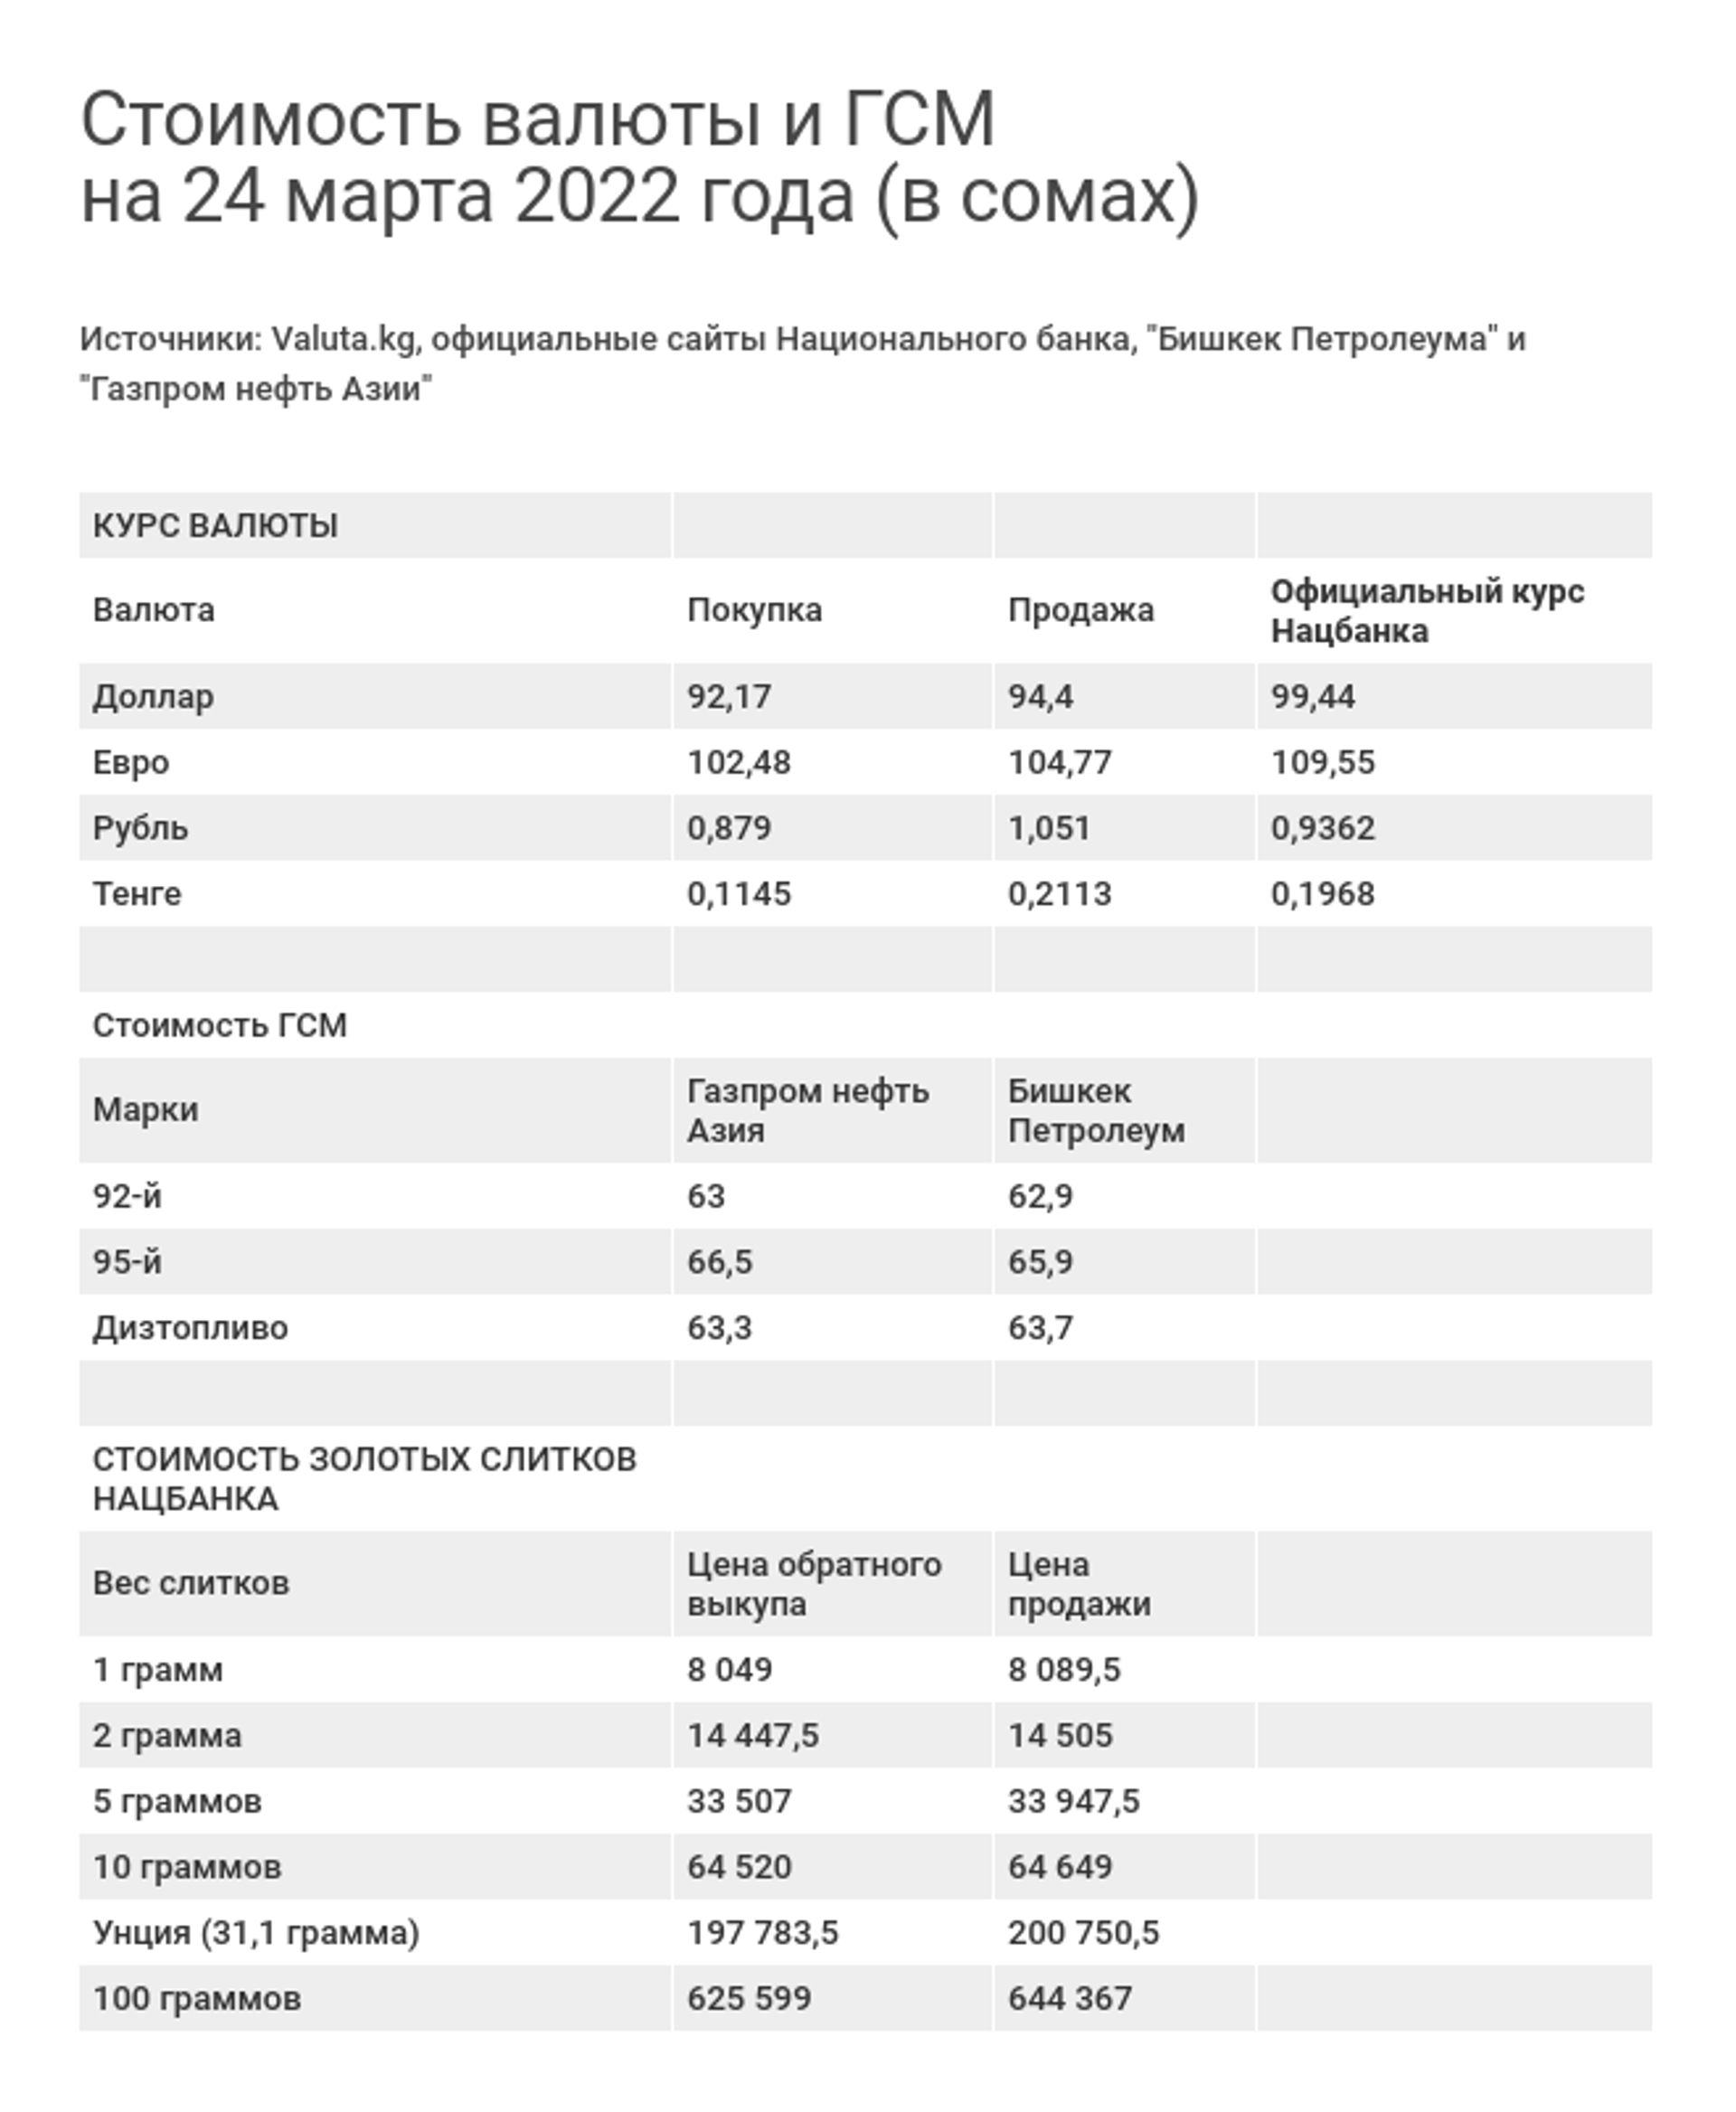 Стоимость валюты и ГСМ на 24 марта 2022 года (в сомах) - Sputnik Кыргызстан, 1920, 24.03.2022